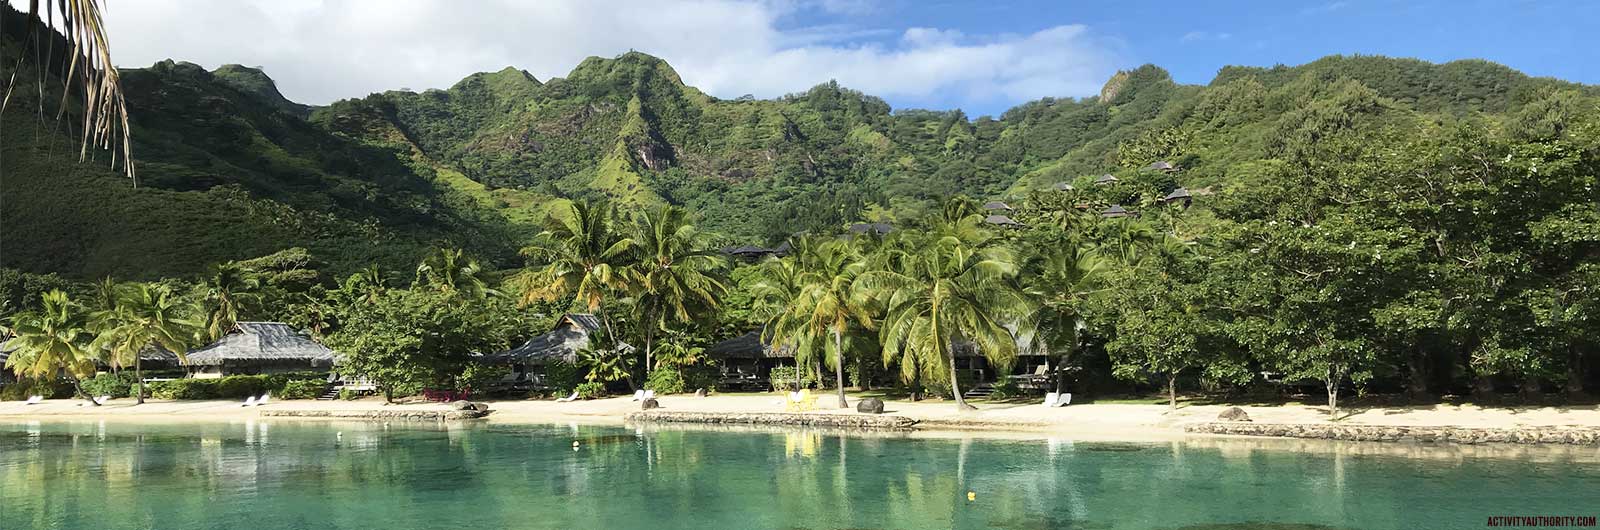 10 Days in Tahiti, Moorea, Tikehau Islands